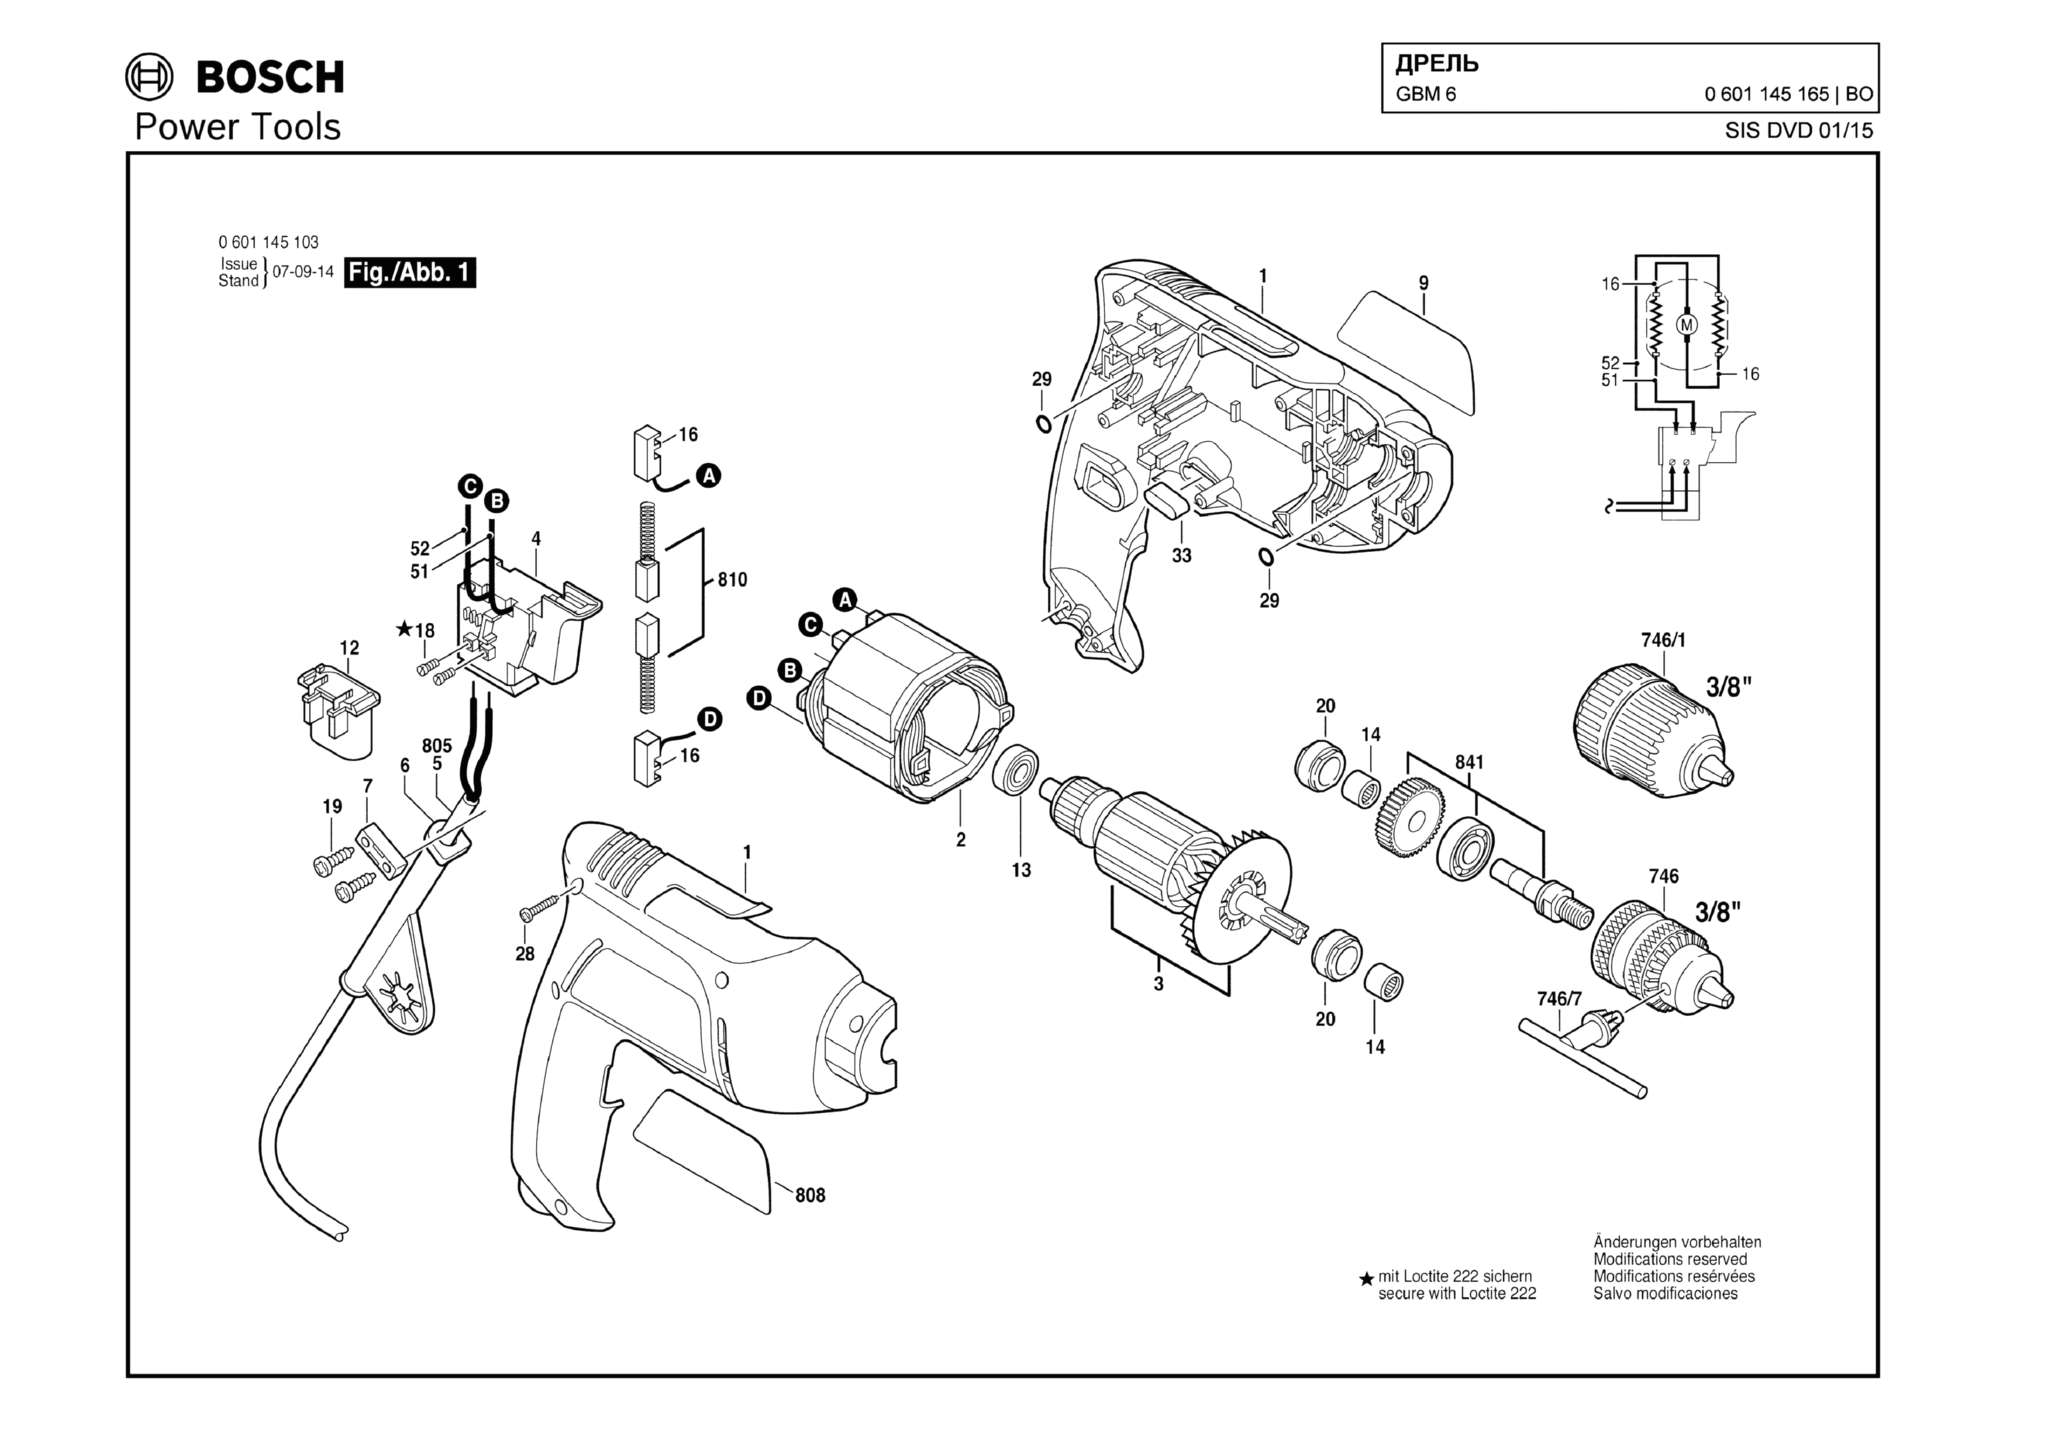 Запчасти, схема и деталировка Bosch GBM 6 (ТИП 0601145165)